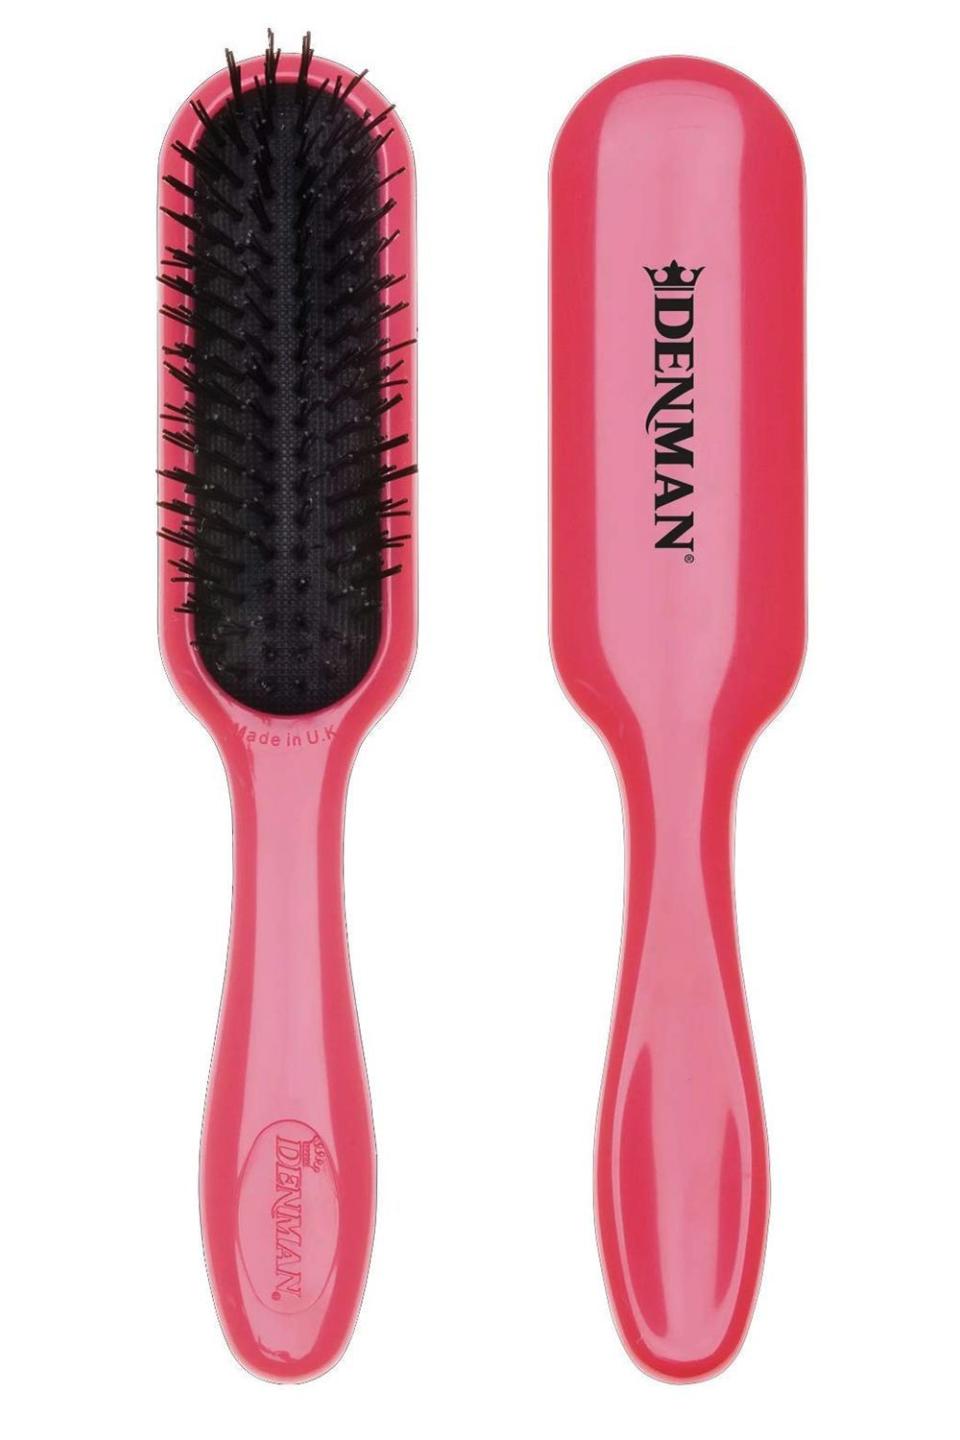 6) Denman Tangle Tamer Hair Detangling Brush